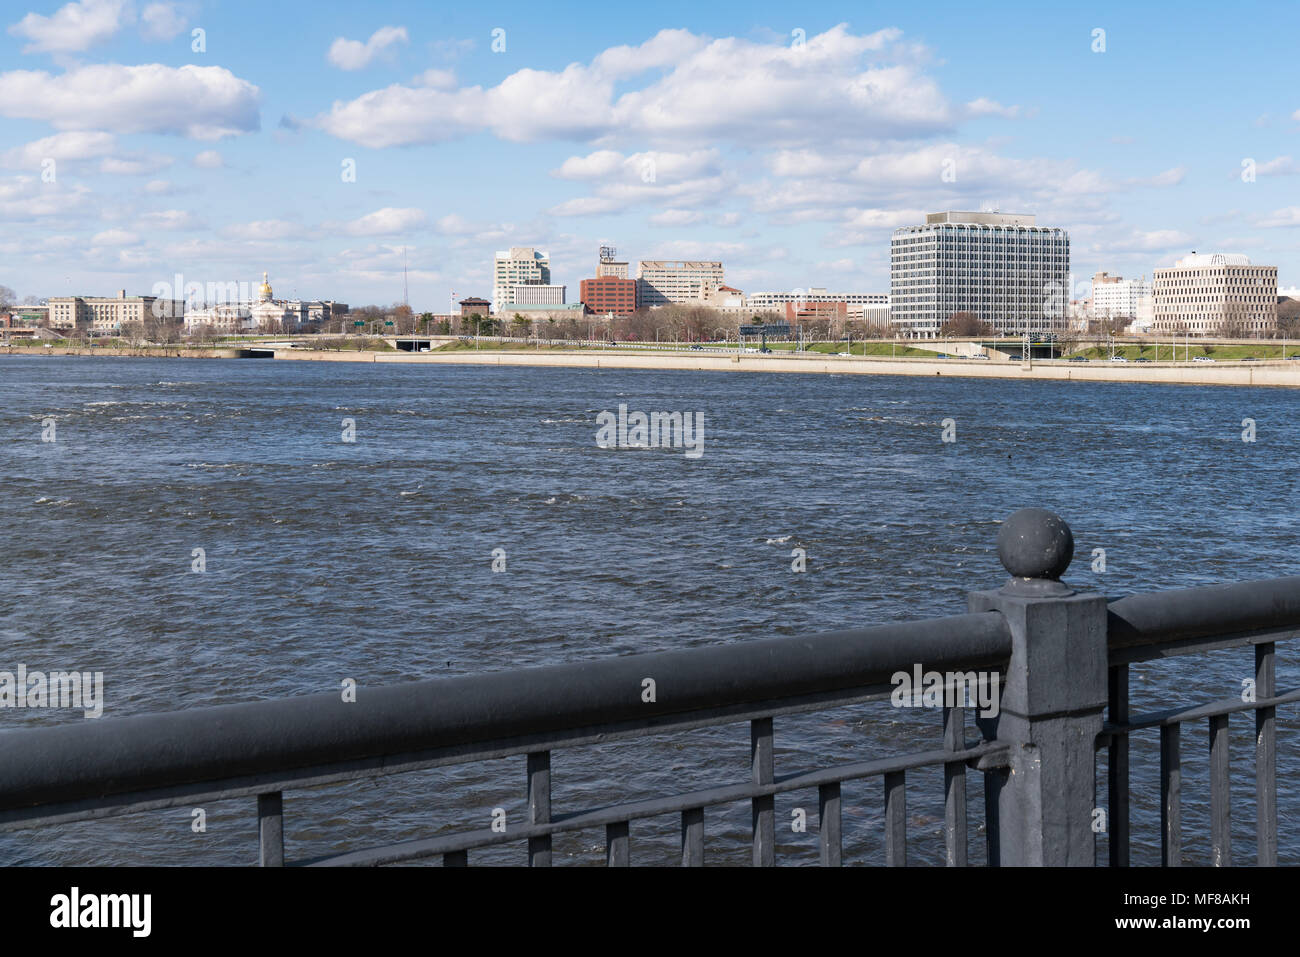 TRENTON, NJ - Abril 5, 2018: el horizonte y el Edificio del Capitolio de Trenton, Nueva Jersey, cruzando el río Delaware Foto de stock